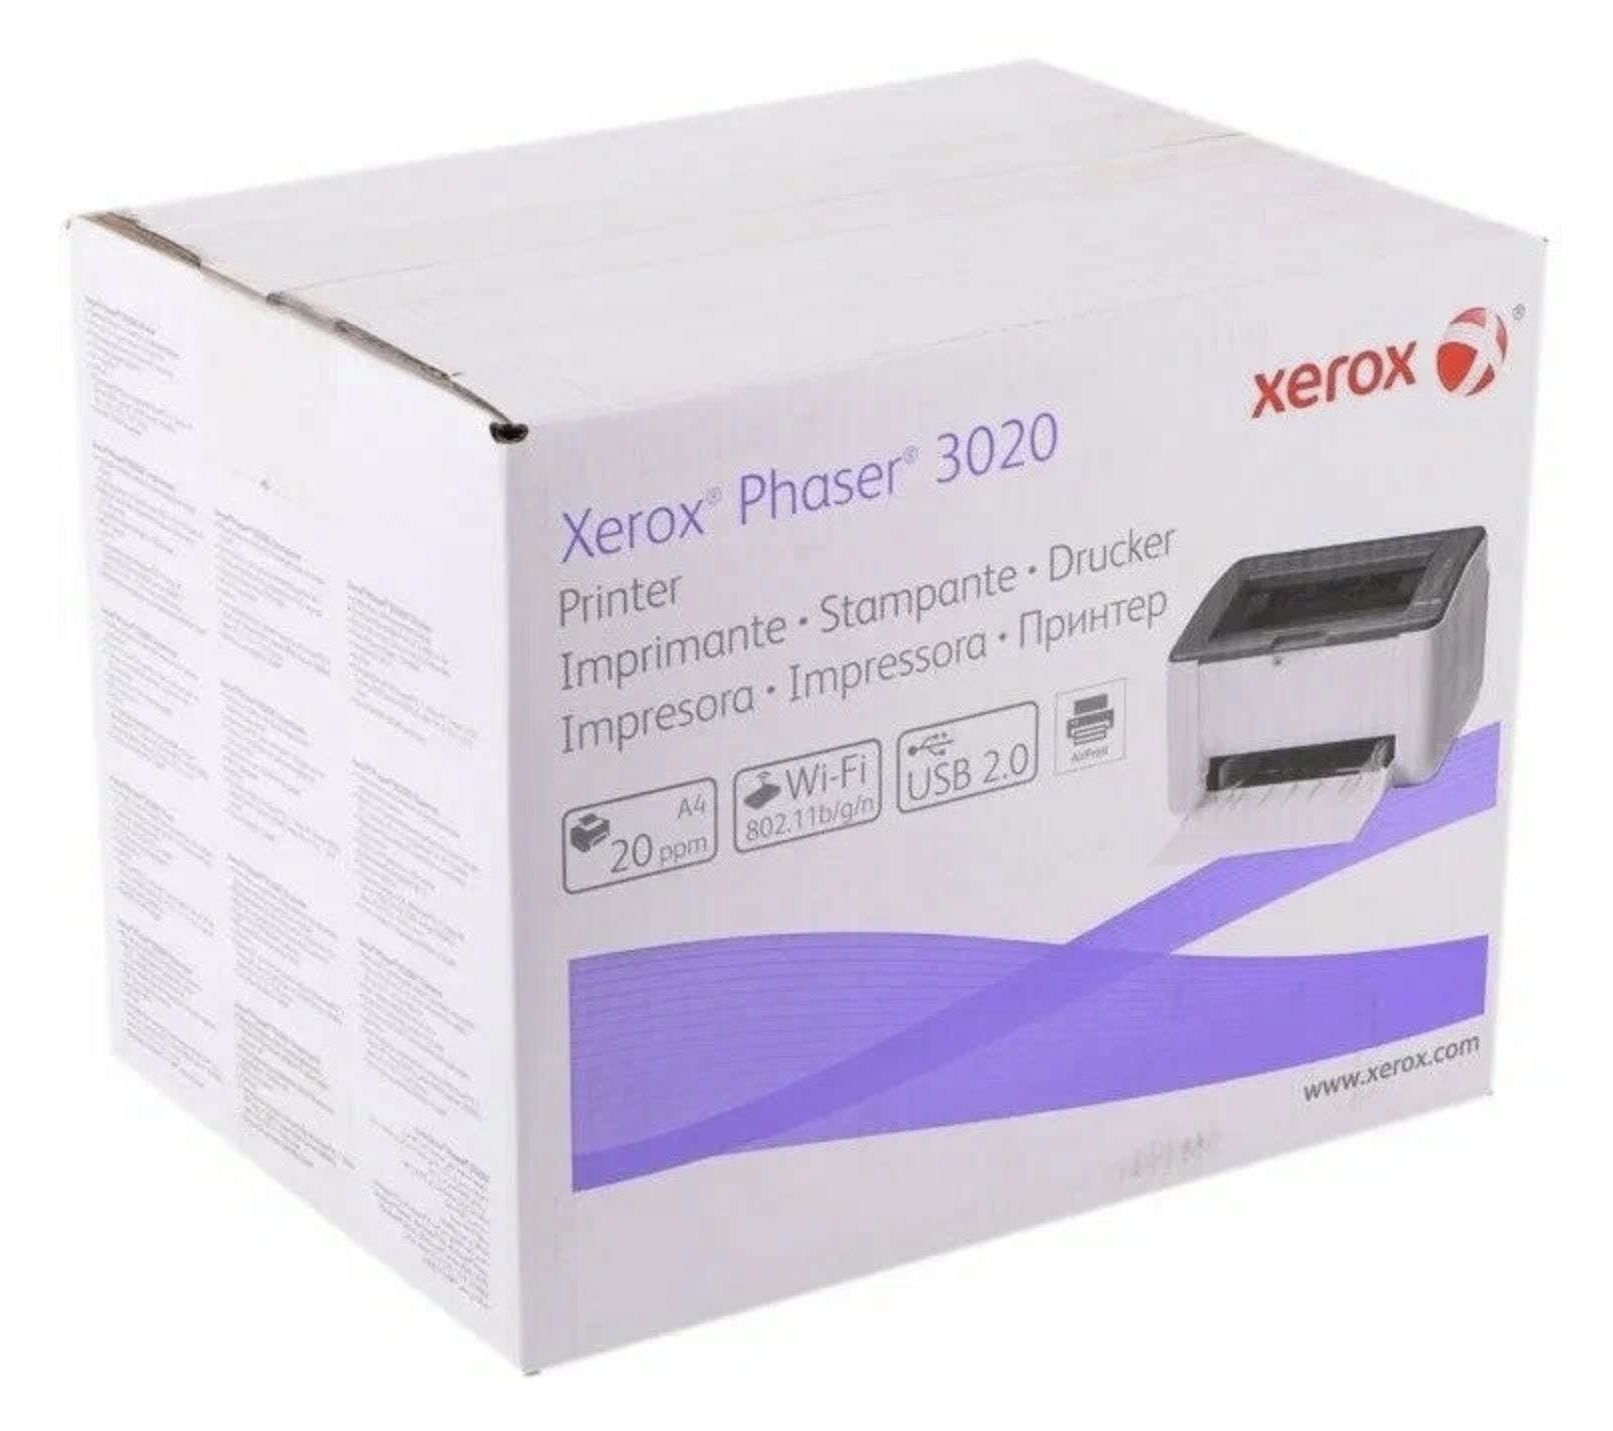 Купить принтер xerox 3020. Xerox Phaser 3020. Принтер Xerox Phaser 3020. Принтер Xerox Phaser 3020bi. Xerox Phaser 3020bi, ч/б, a4.